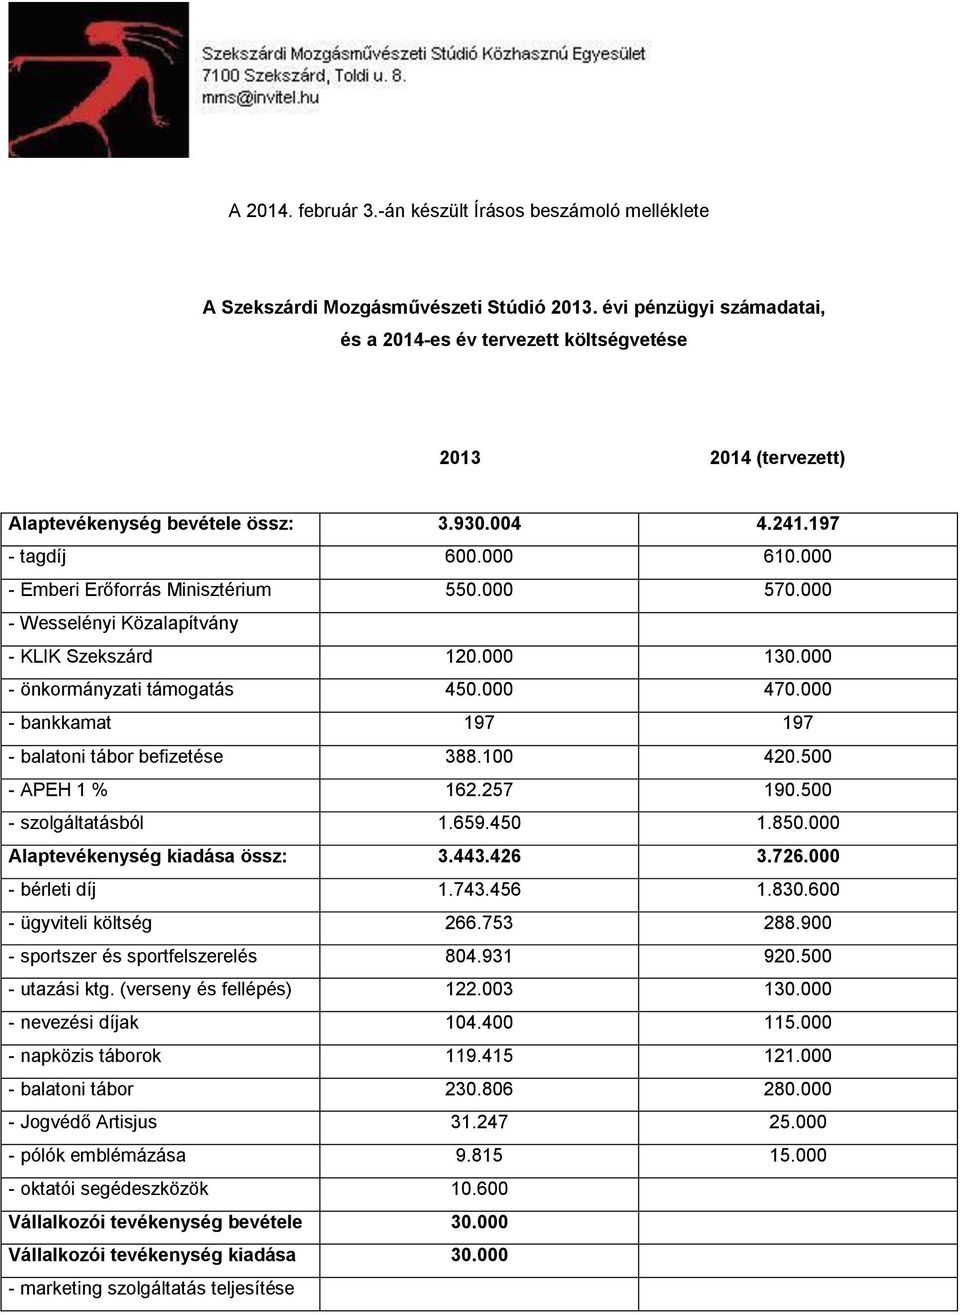 000 570.000 - Wesselényi Közalapítvány - KLIK Szekszárd 120.000 130.000 - önkormányzati támogatás 450.000 470.000 - bankkamat 197 197 - balatoni tábor befizetése 388.100 420.500 - APEH 1 % 162.